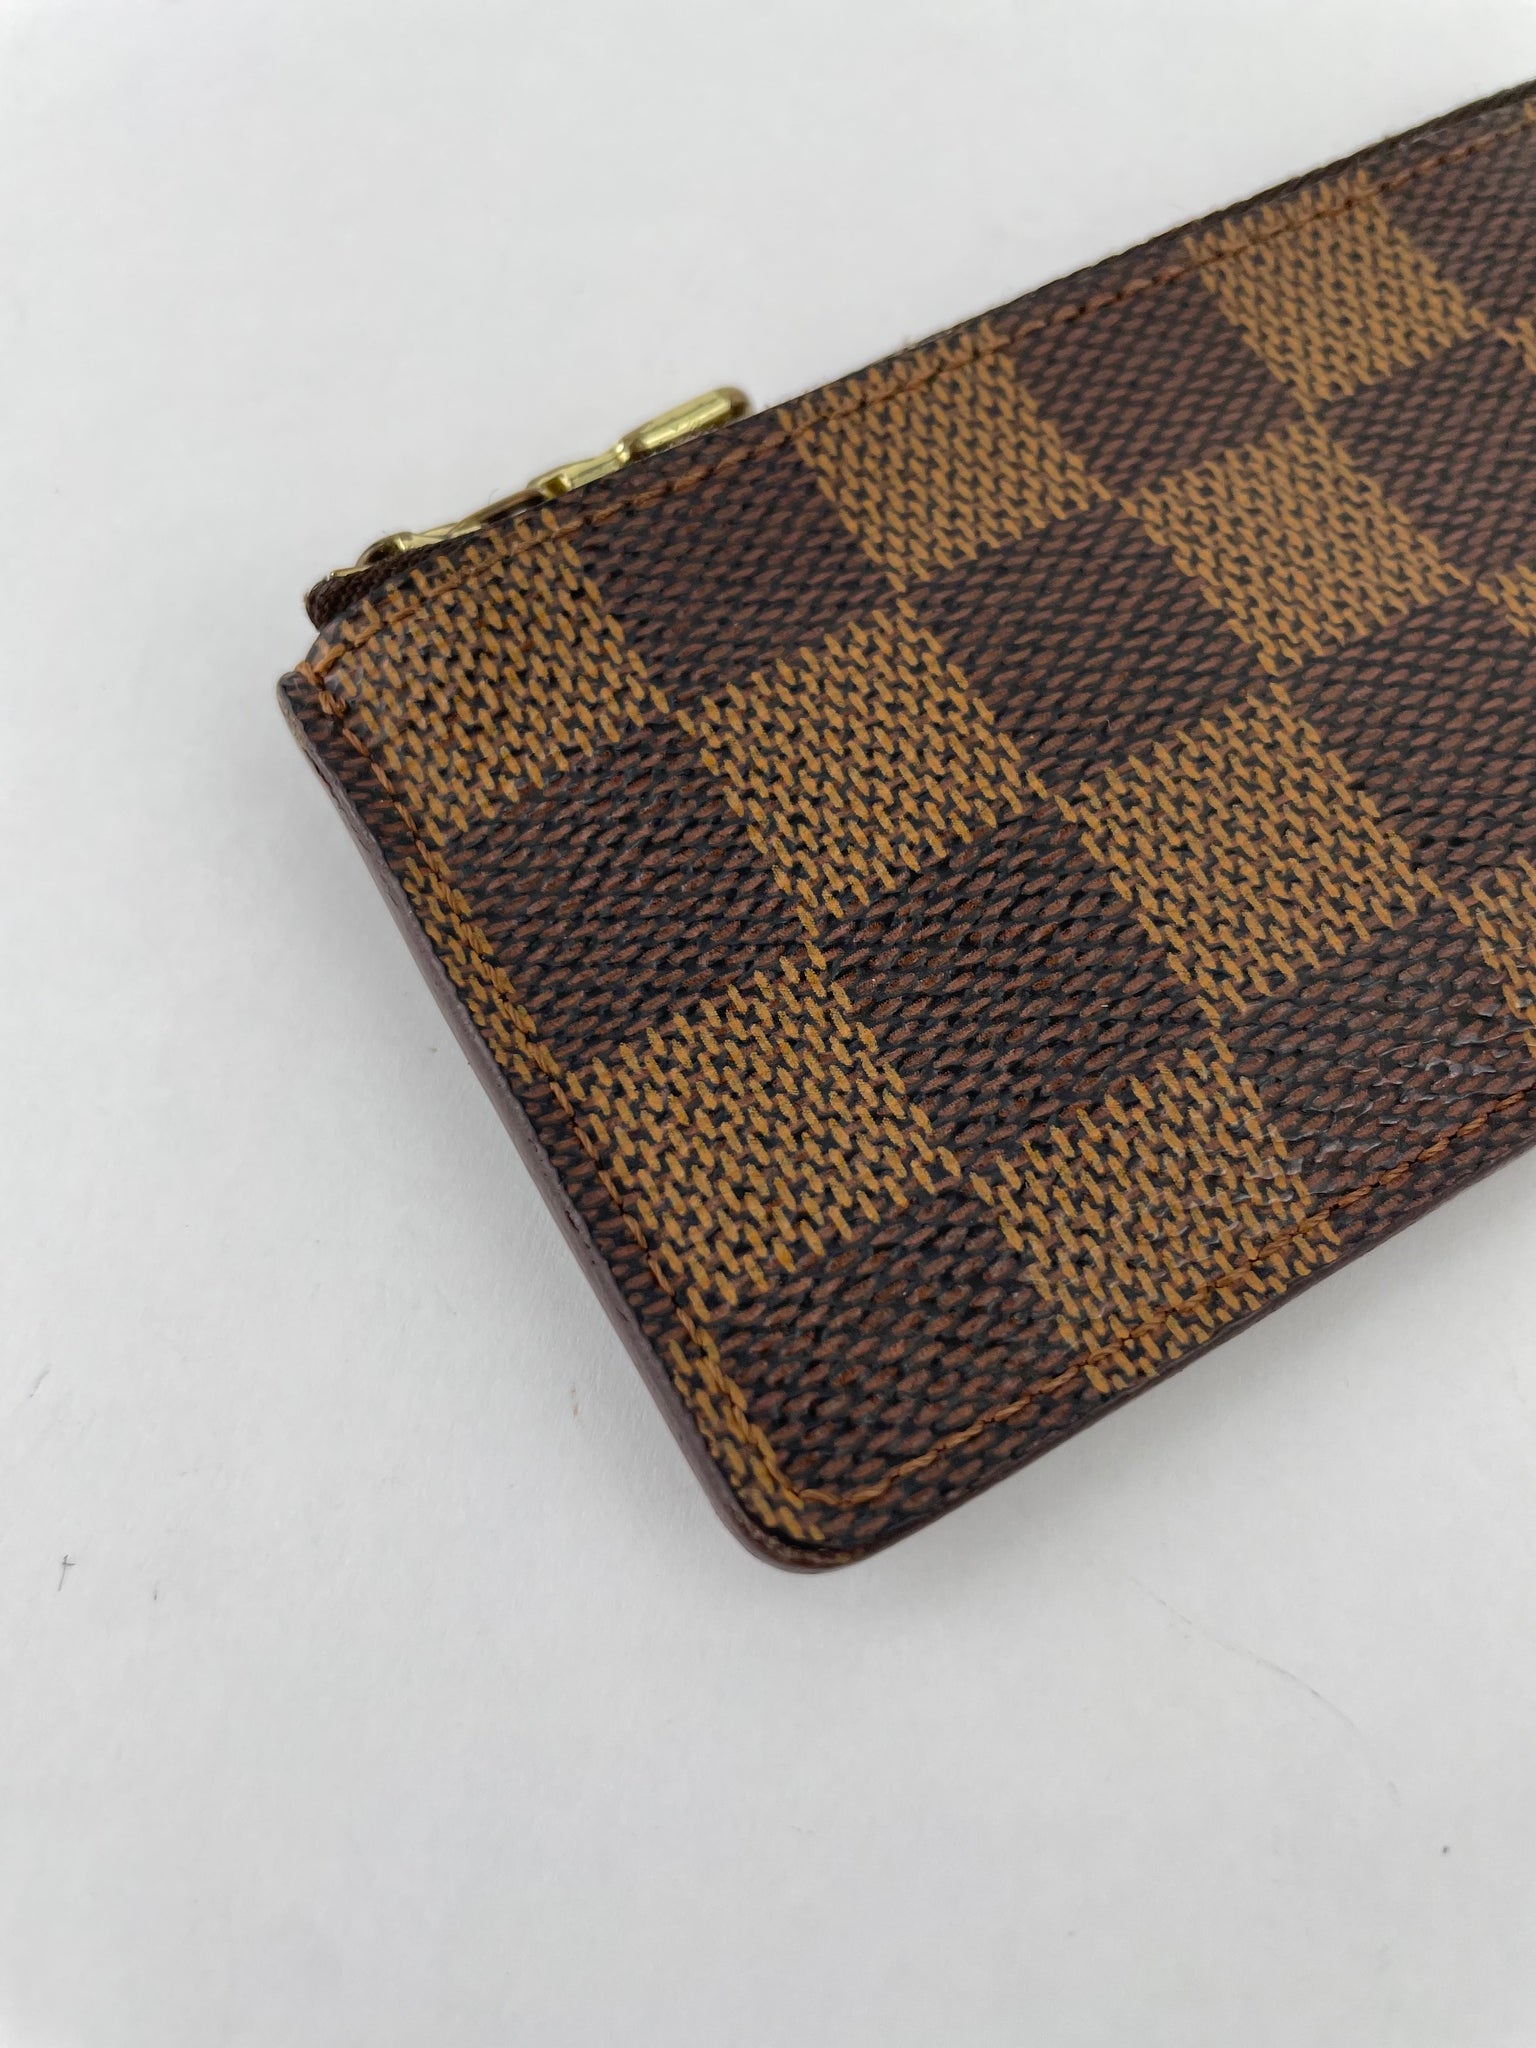 Pochette Cles Damier Ebene – Keeks Designer Handbags